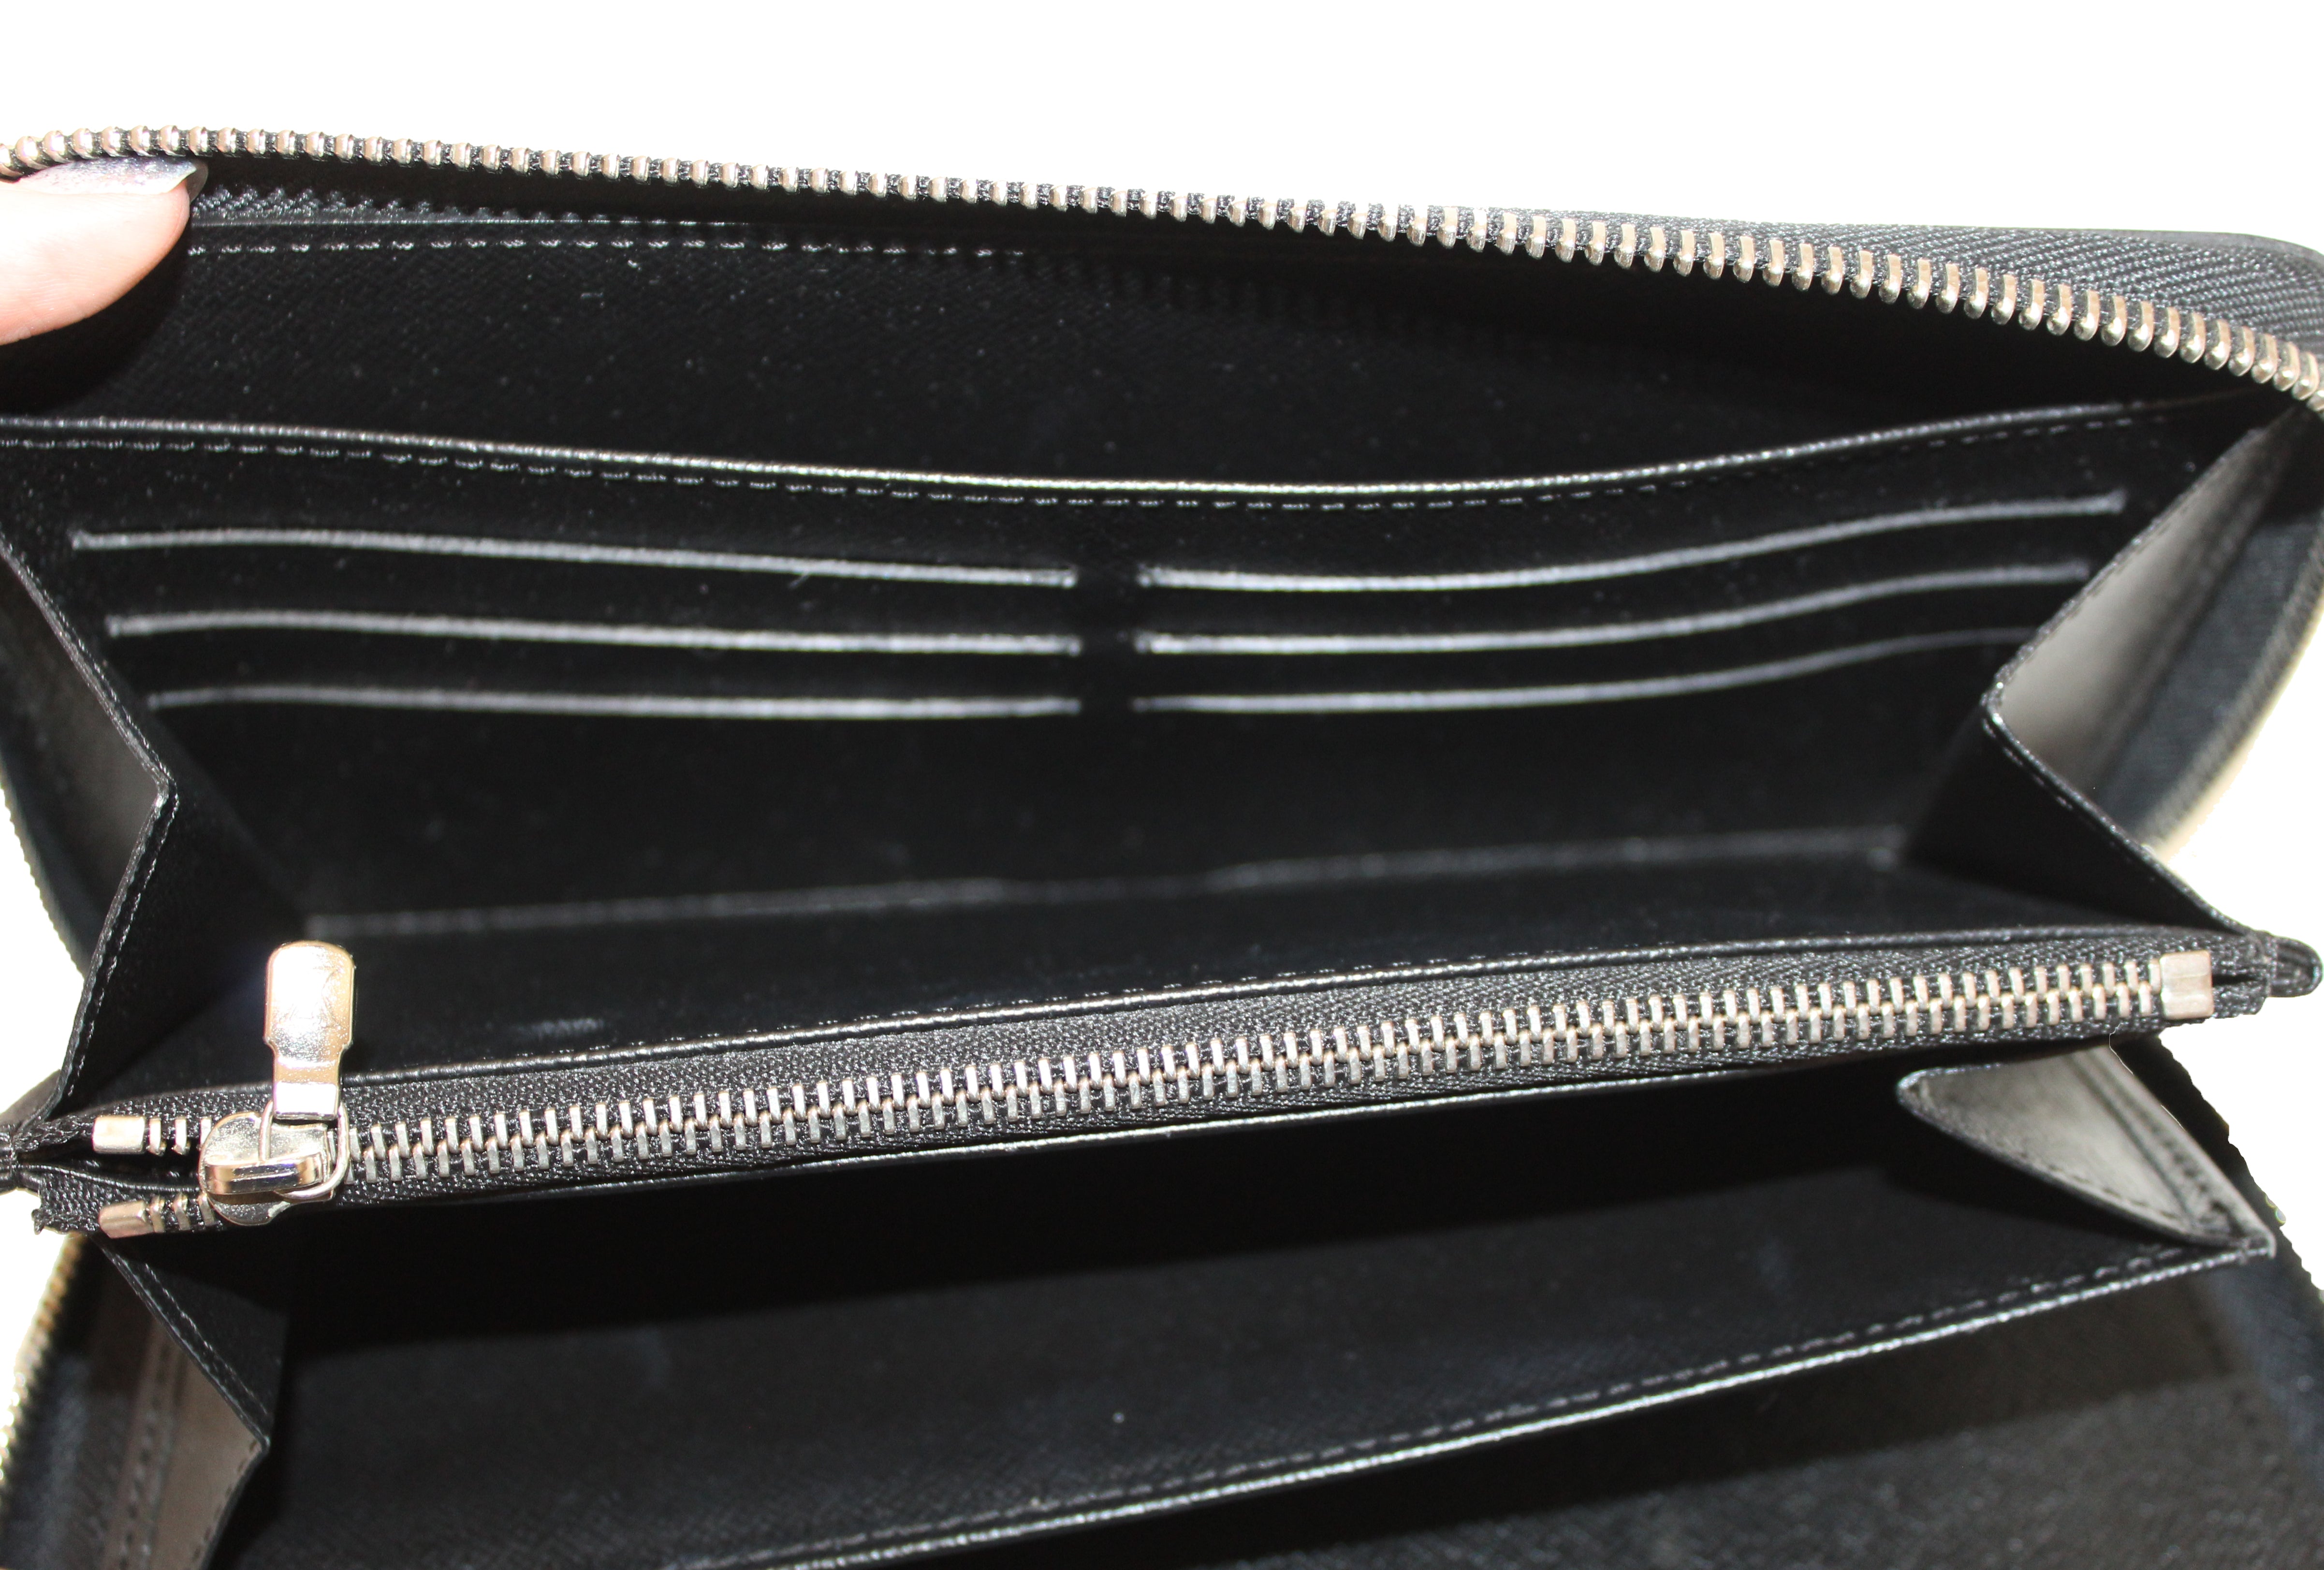 Louis Vuitton EPI Leather Zippy Organizer Wallet